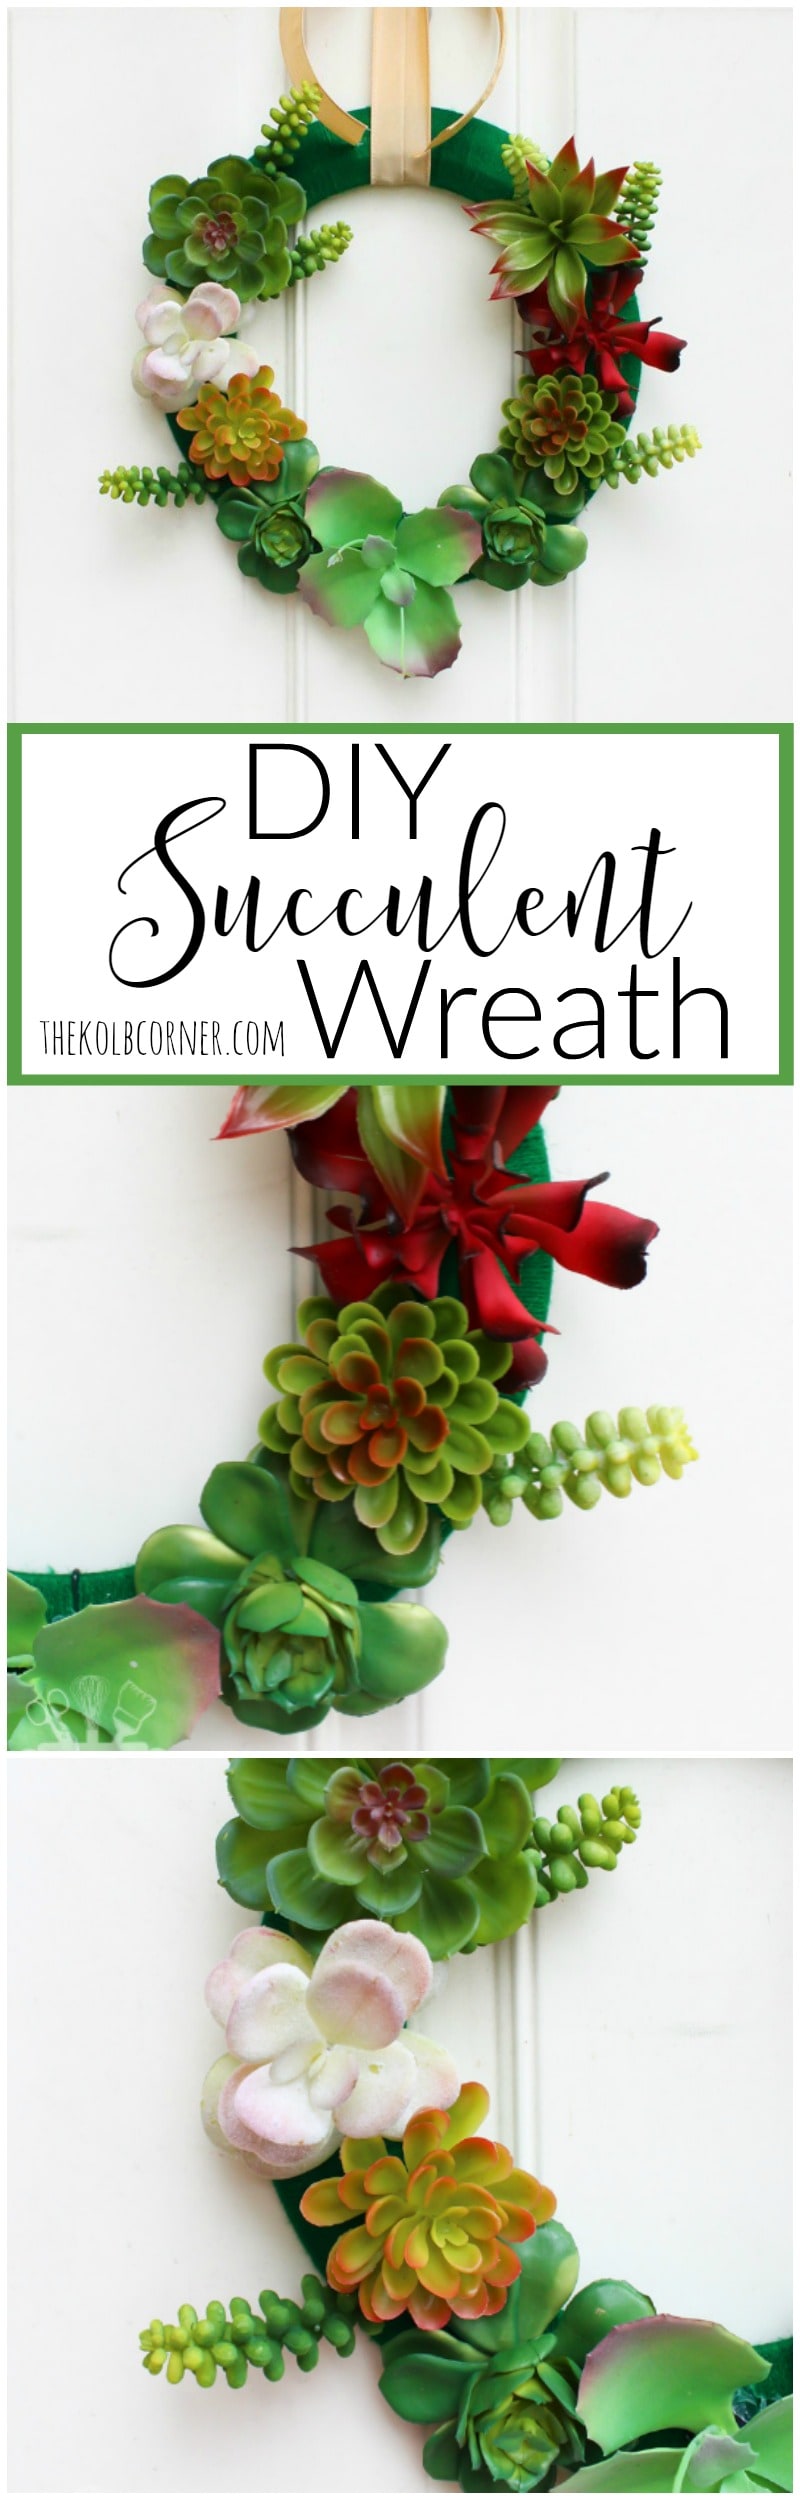 DIY Succulent Wreath